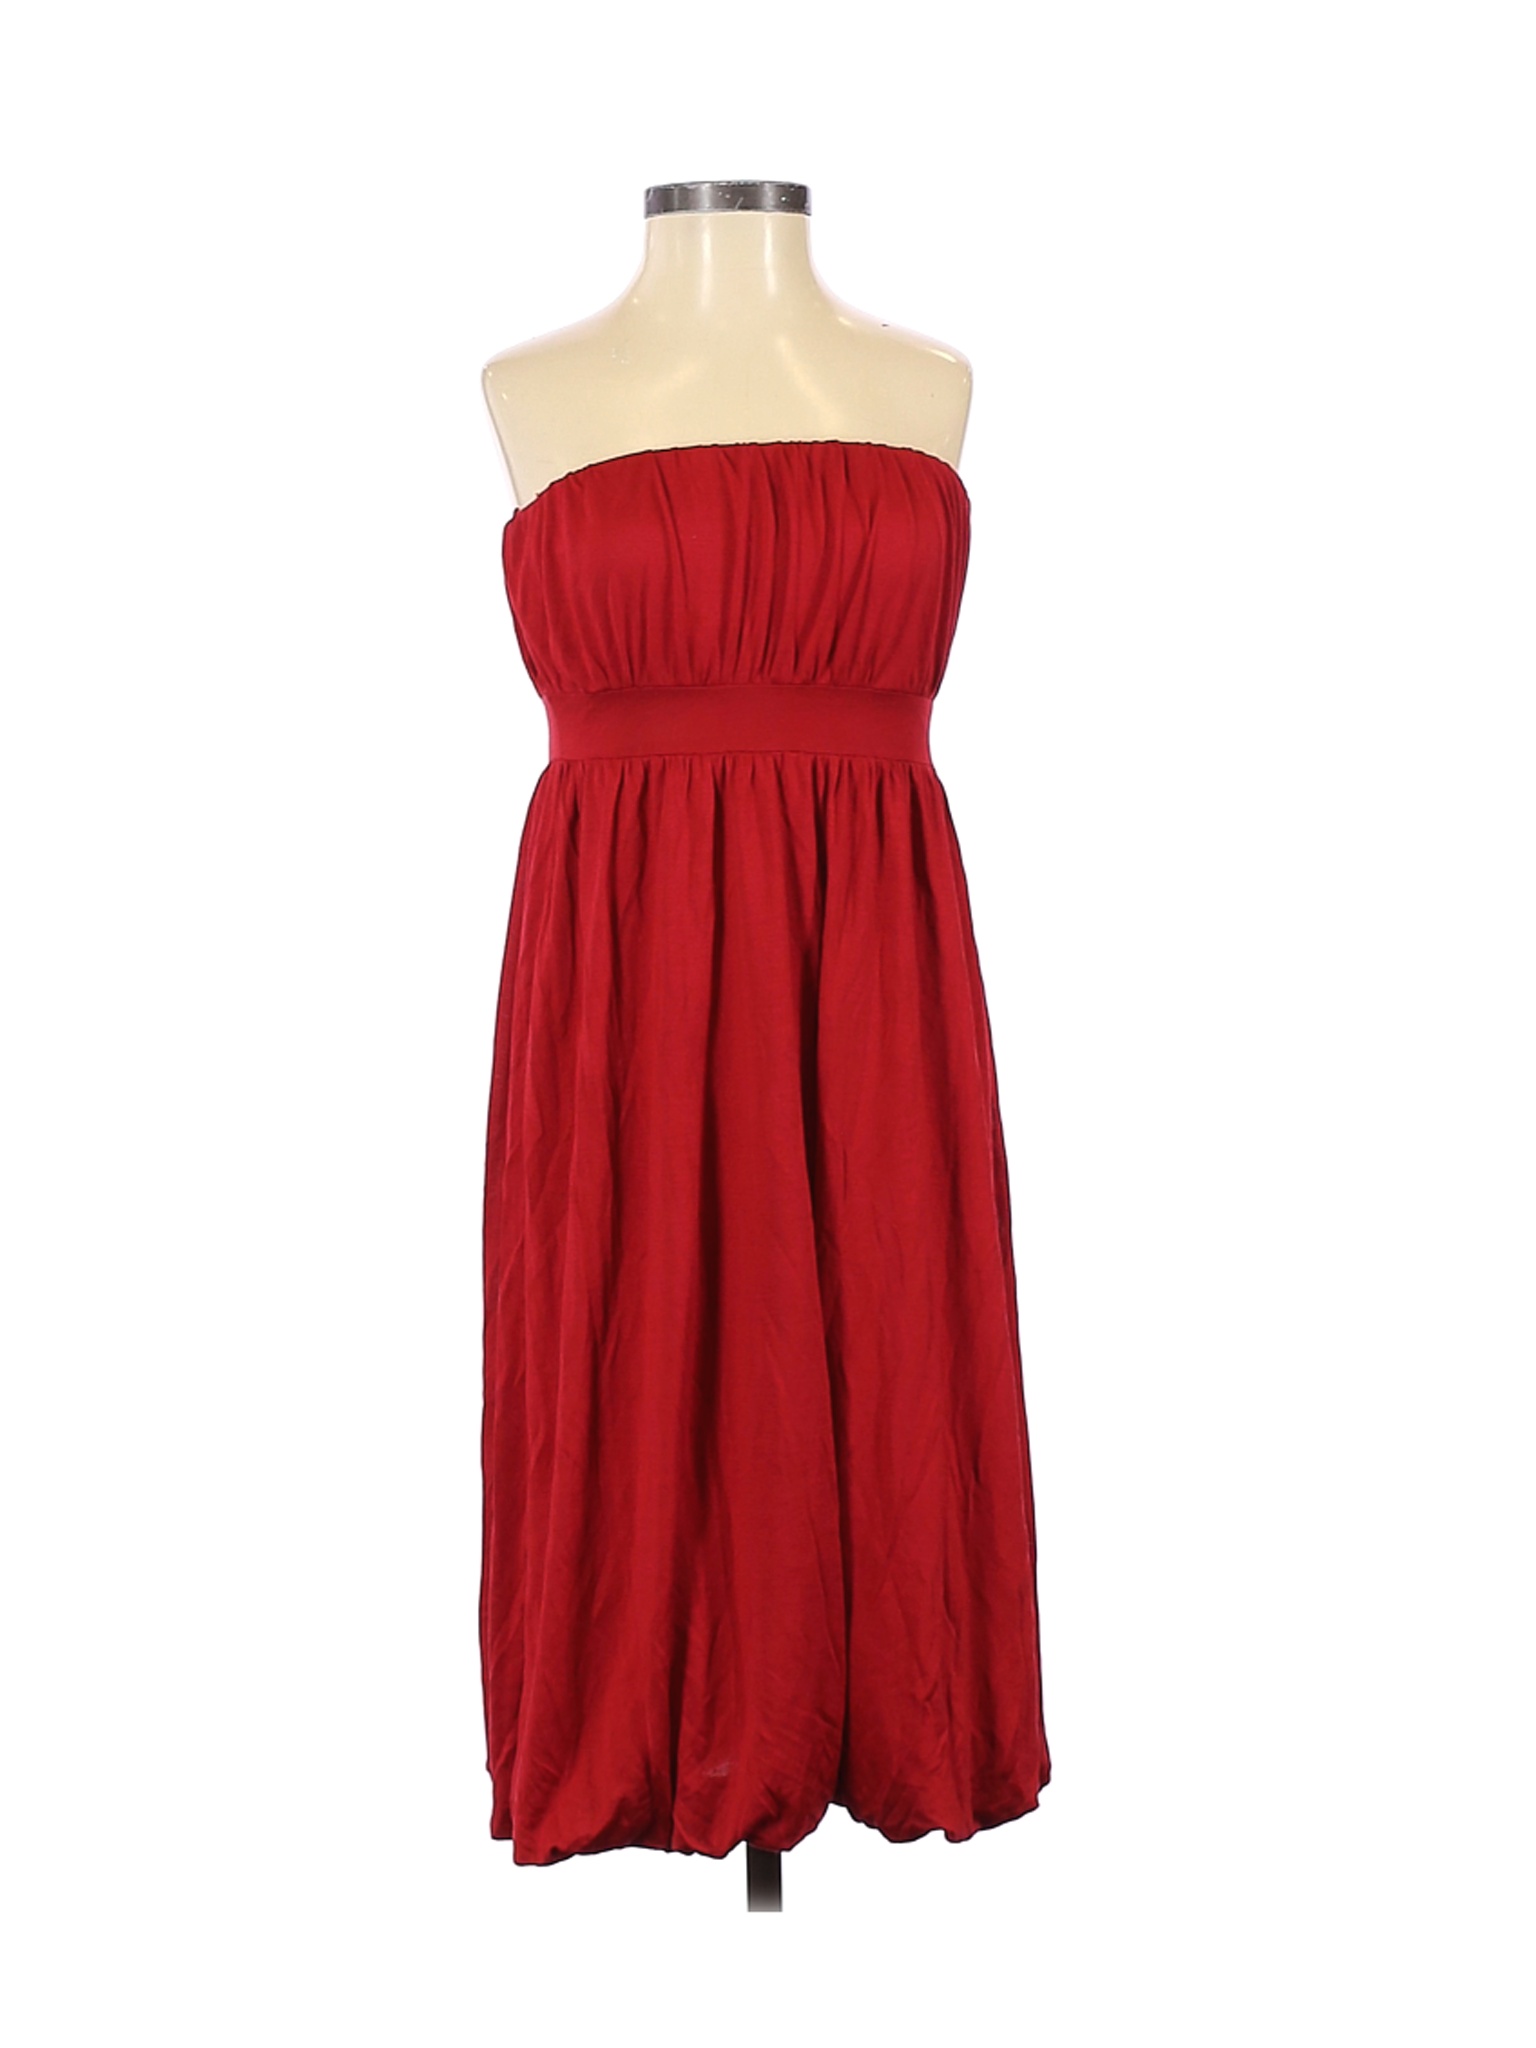 Banana Republic Women Red Casual Dress 2 | eBay